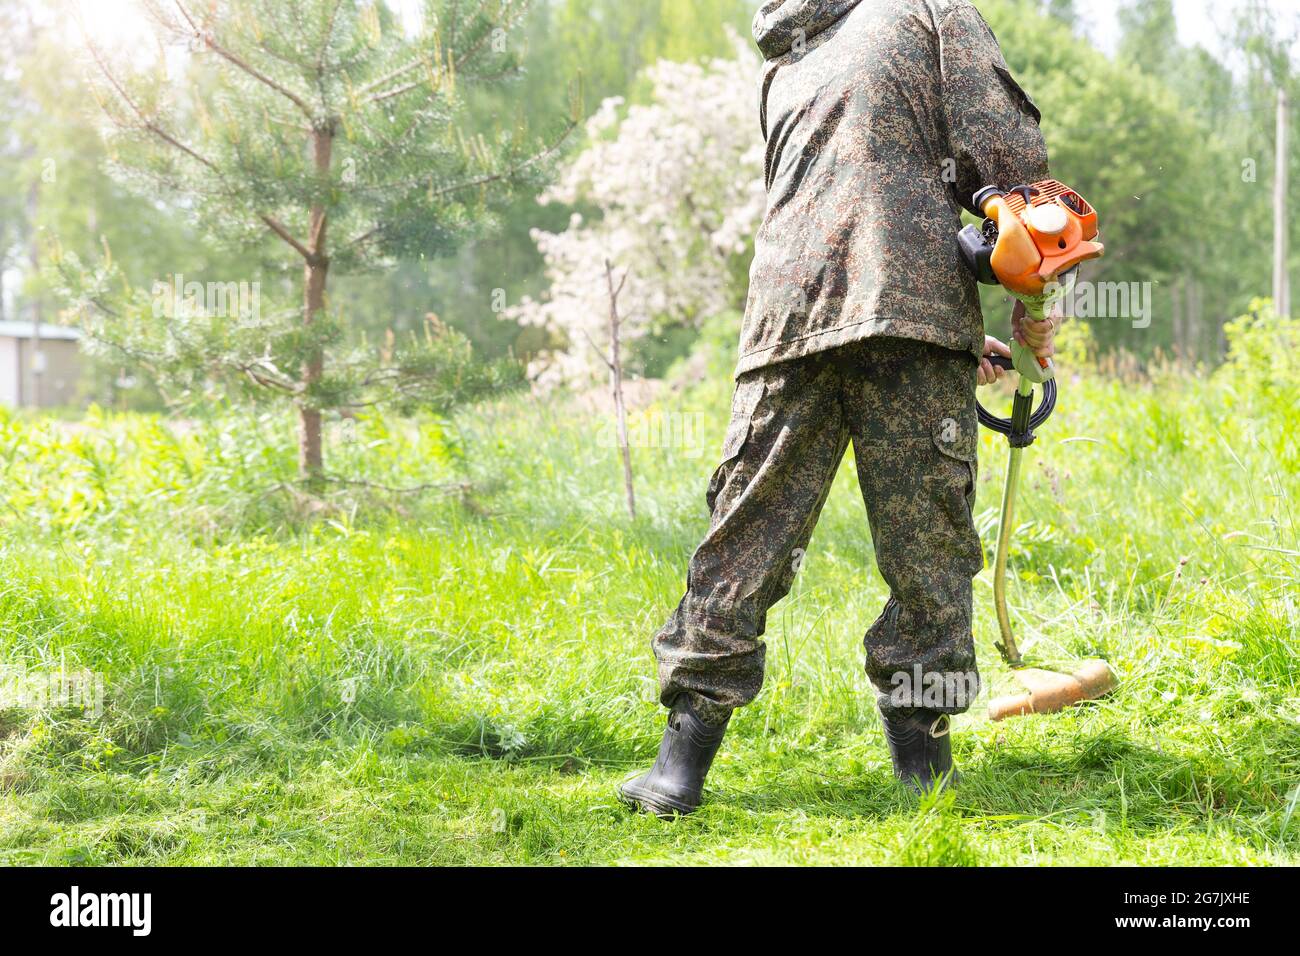 Ein Arbeiter in der Wohnmobil-Arbeitskleidung mäht hohes Gras mit Benzin-Rasentrimmer oder Rasenmäher im Stadtpark, Garten oder Hinterhof. Gartenpflege-Tools und Stockfoto